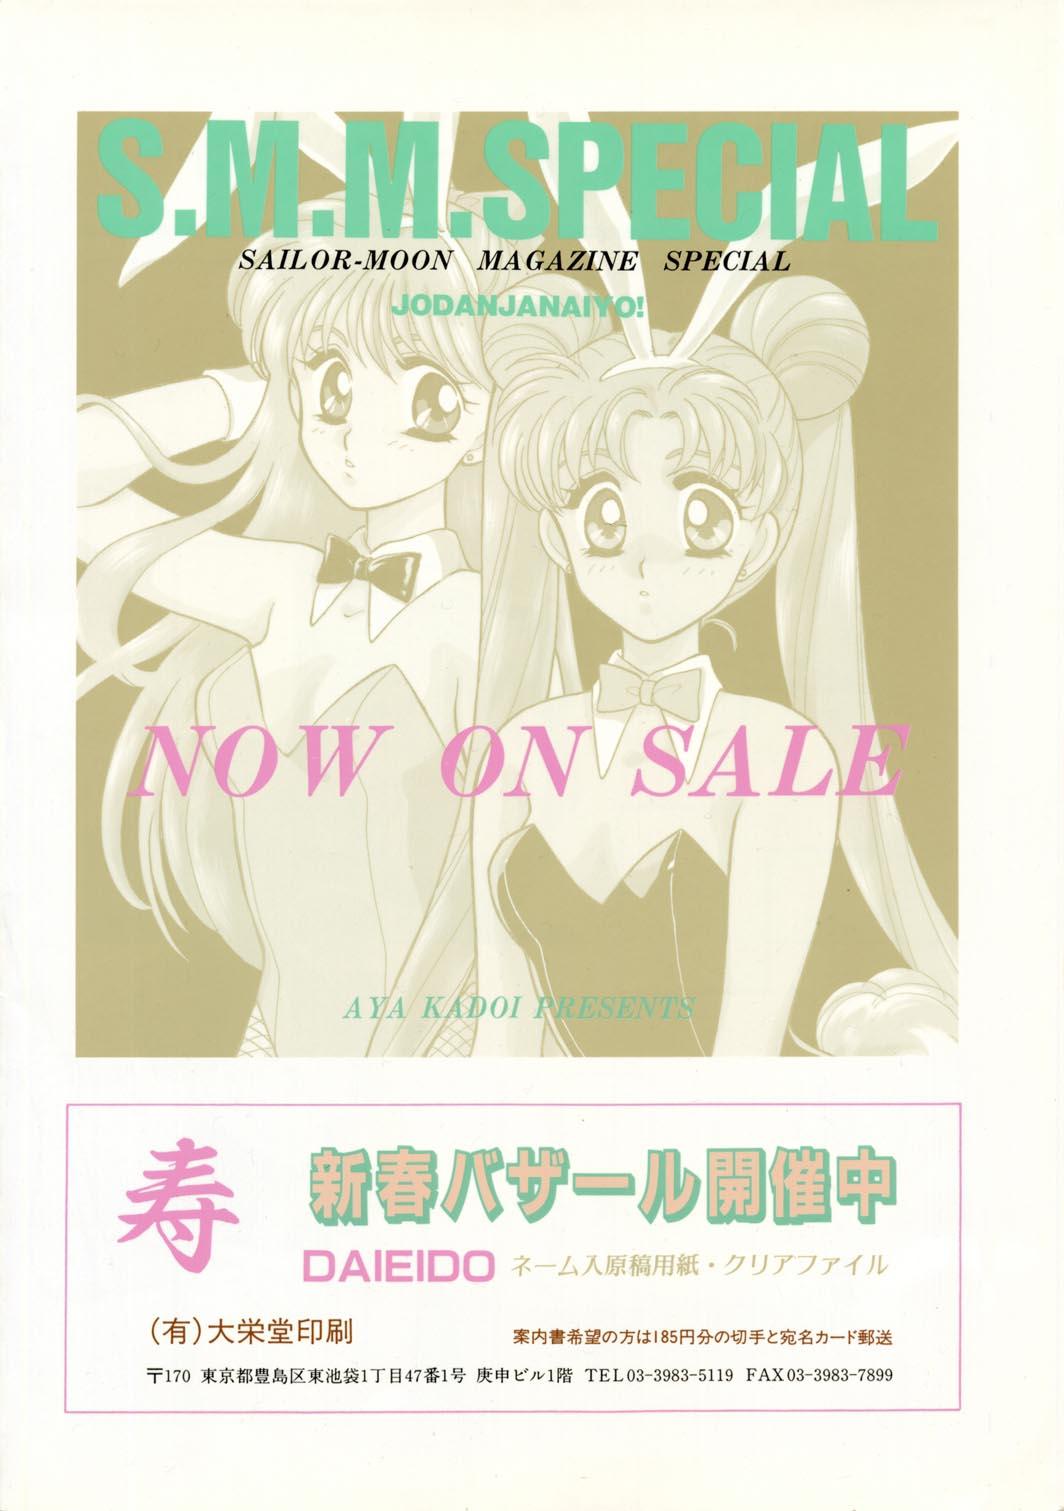 Sailor Moon JodanJanaiyo 111